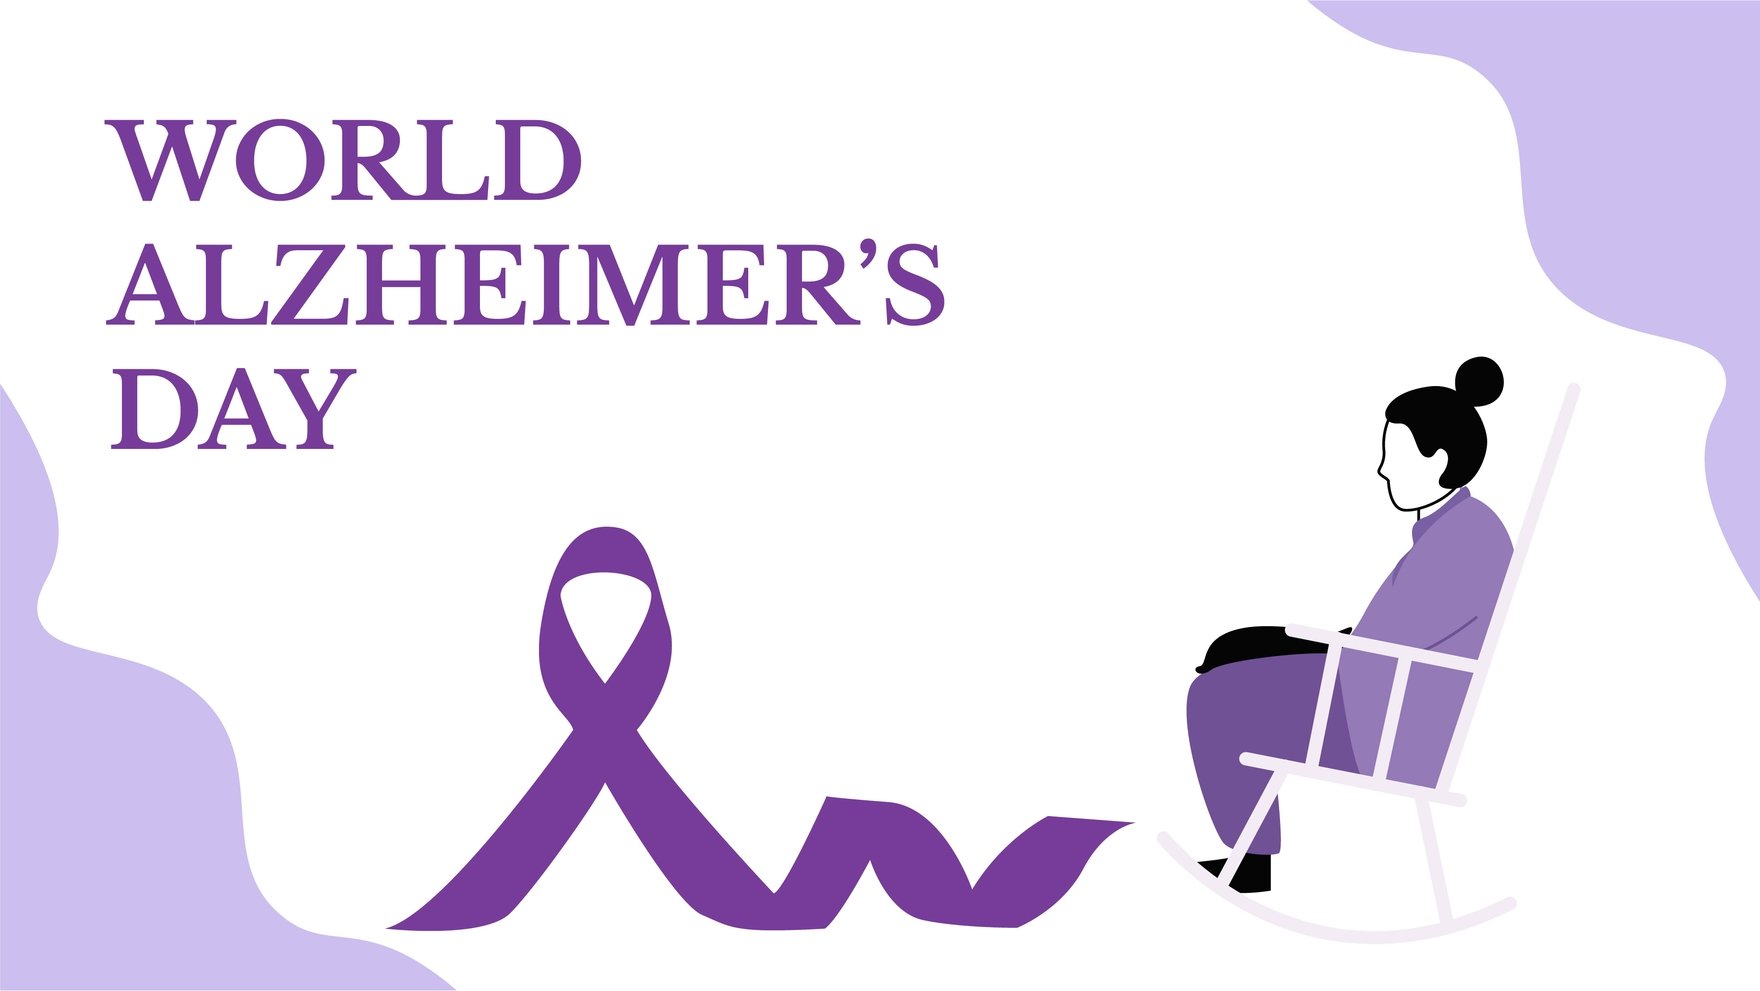 World Alzheimer’s Day Background